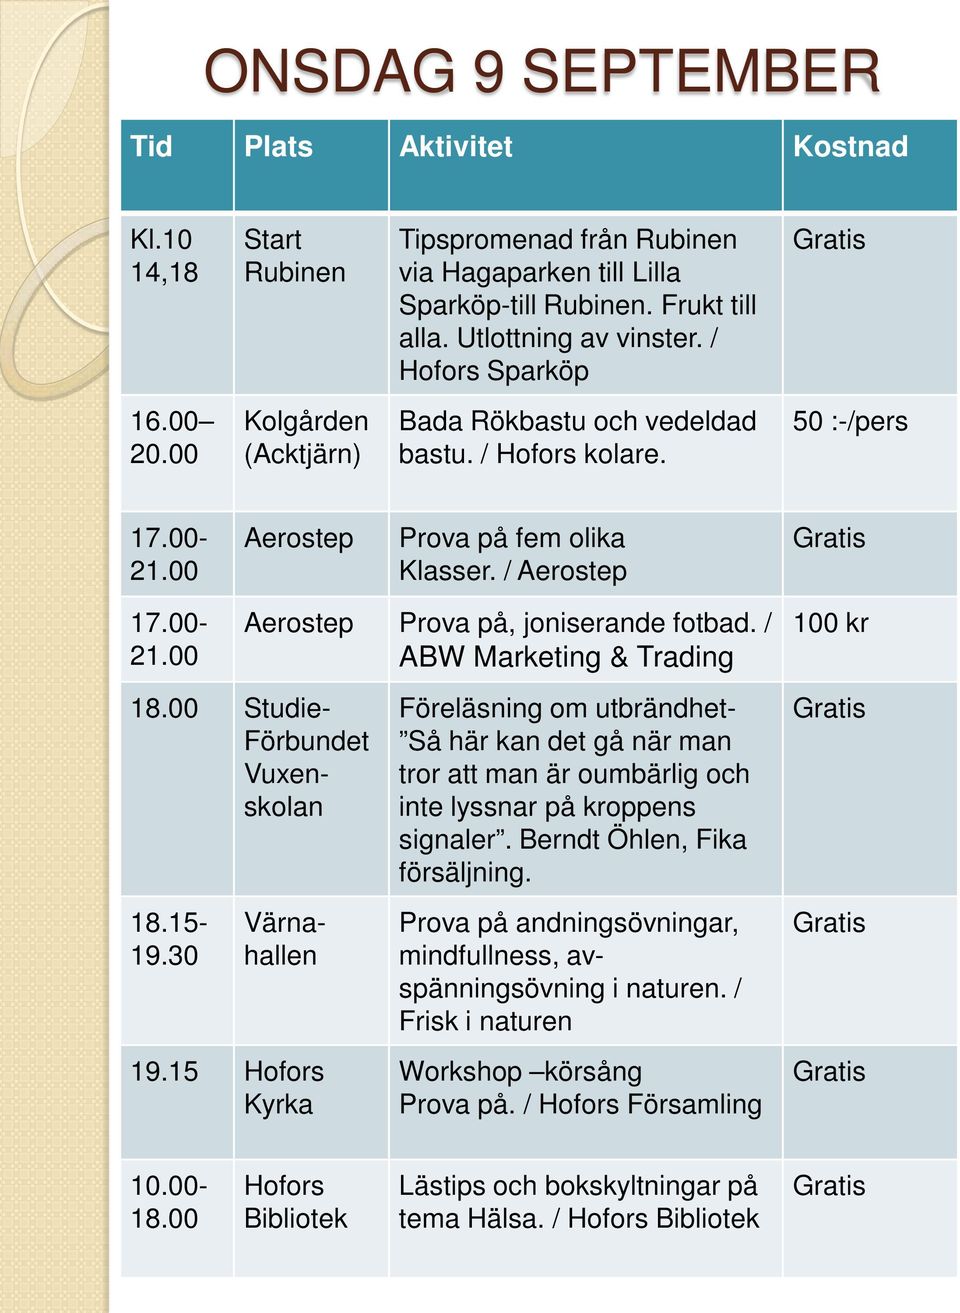 / ABW Marketing & Trading 18.00 Studie- Förbundet Vuxenskolan 18.15-19.30 Värnahallen 19.